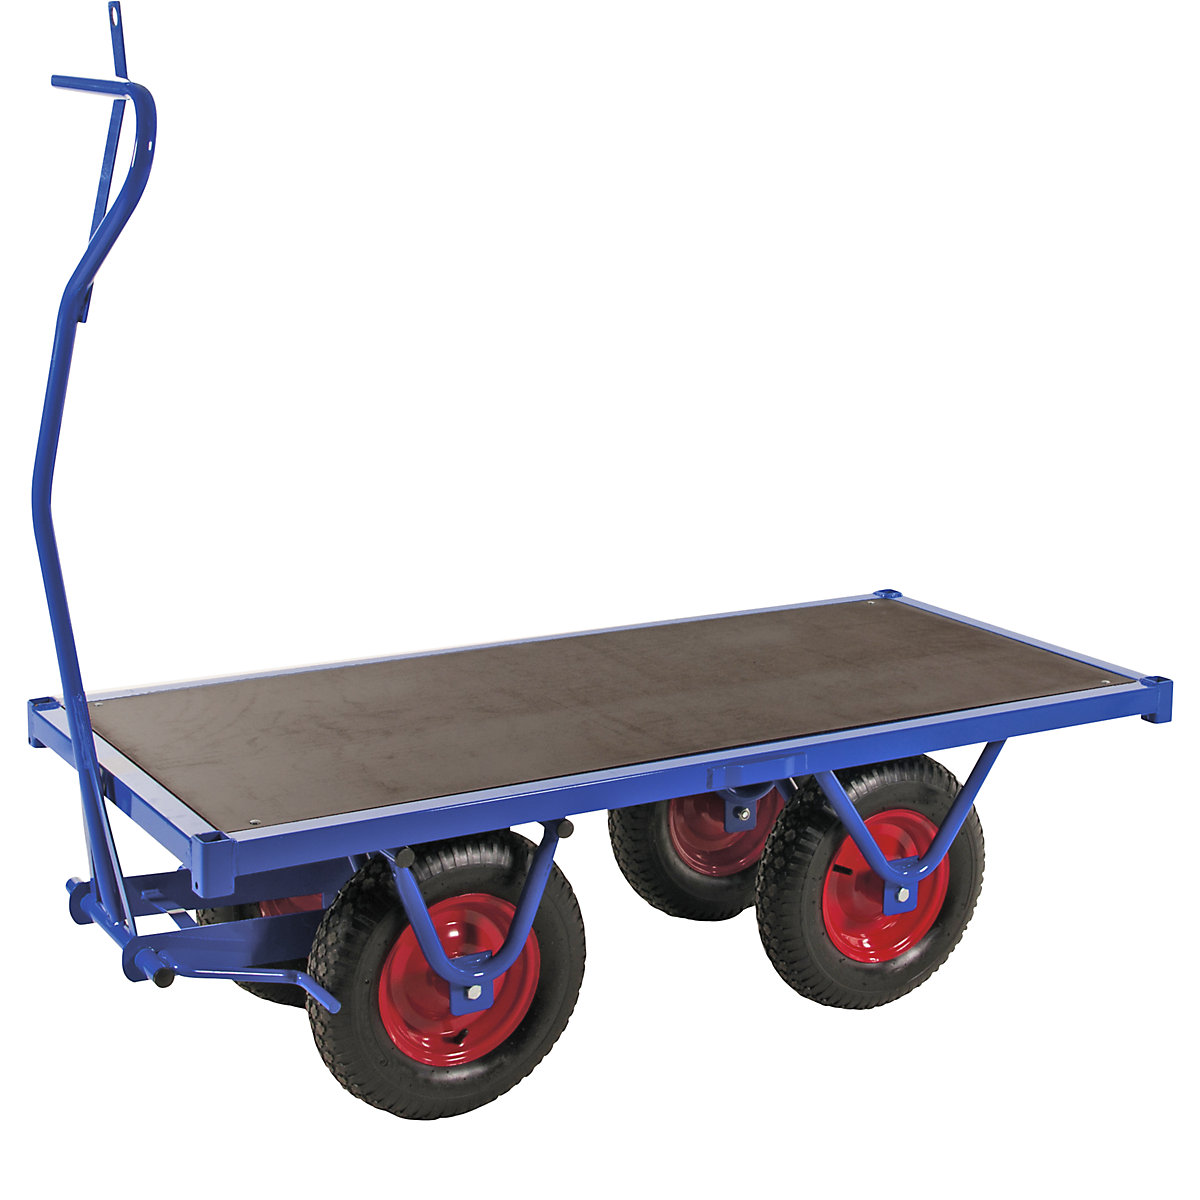 Carro para cargas pesadas – Kongamek, carga máx. 800 kg, cama de 700 x 1500 mm-3